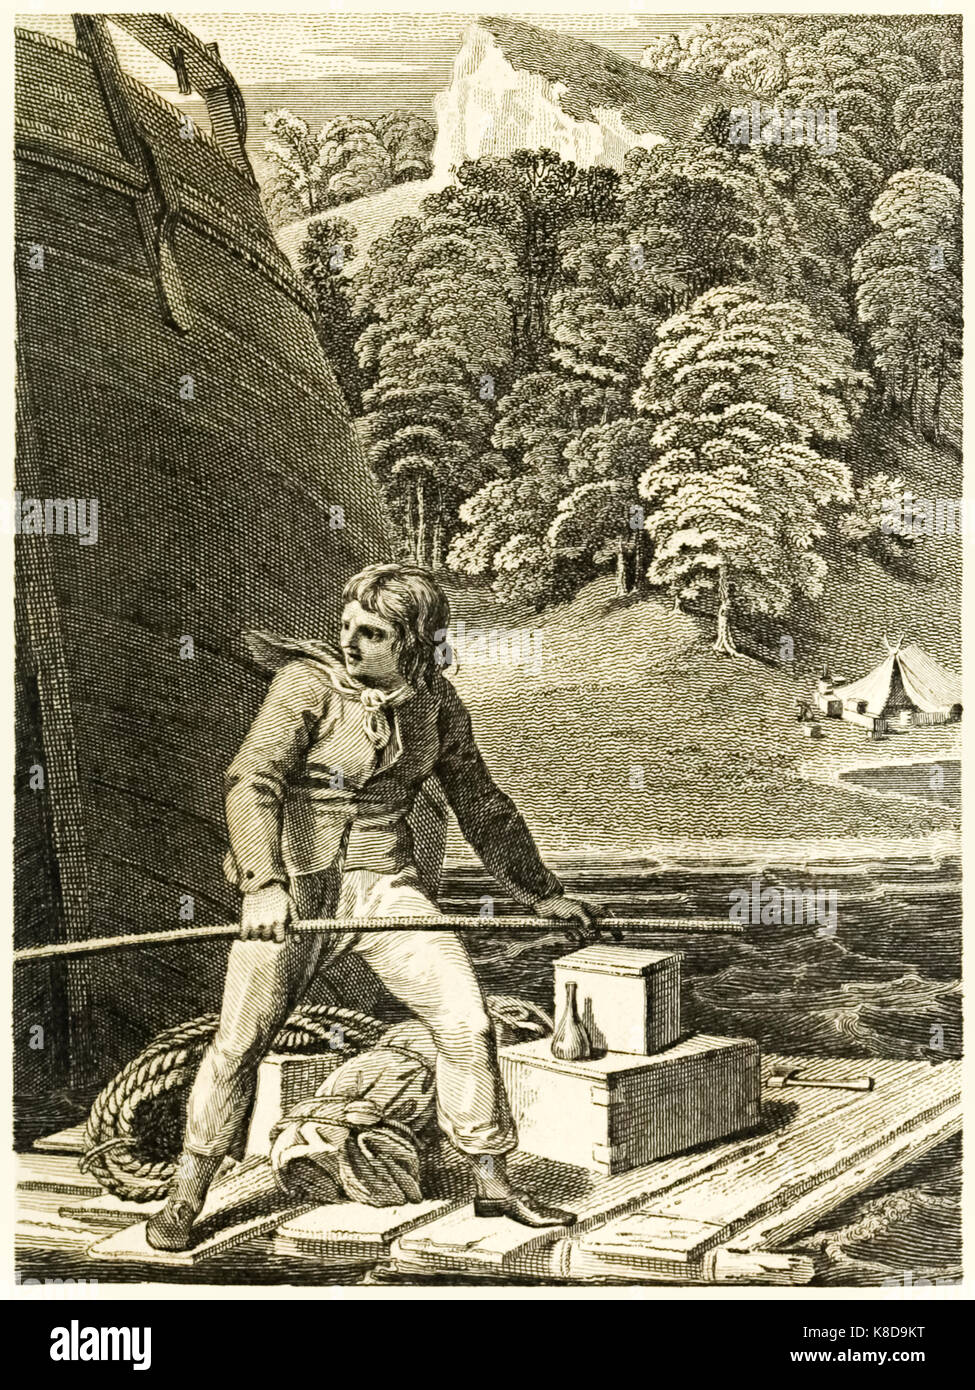 'Robinson Crusoe auf seinem Floß' aus "Das Leben und die seltsamen überraschenden Abenteuer des Robinson Crusoe, oder York, Mariner" von Daniel Defoe (1660-1731). Abbildung von Thomas Stothard (1755-1834) Stich von Thomas Galen (1765-1833). Weitere Informationen finden Sie unter Stockfoto